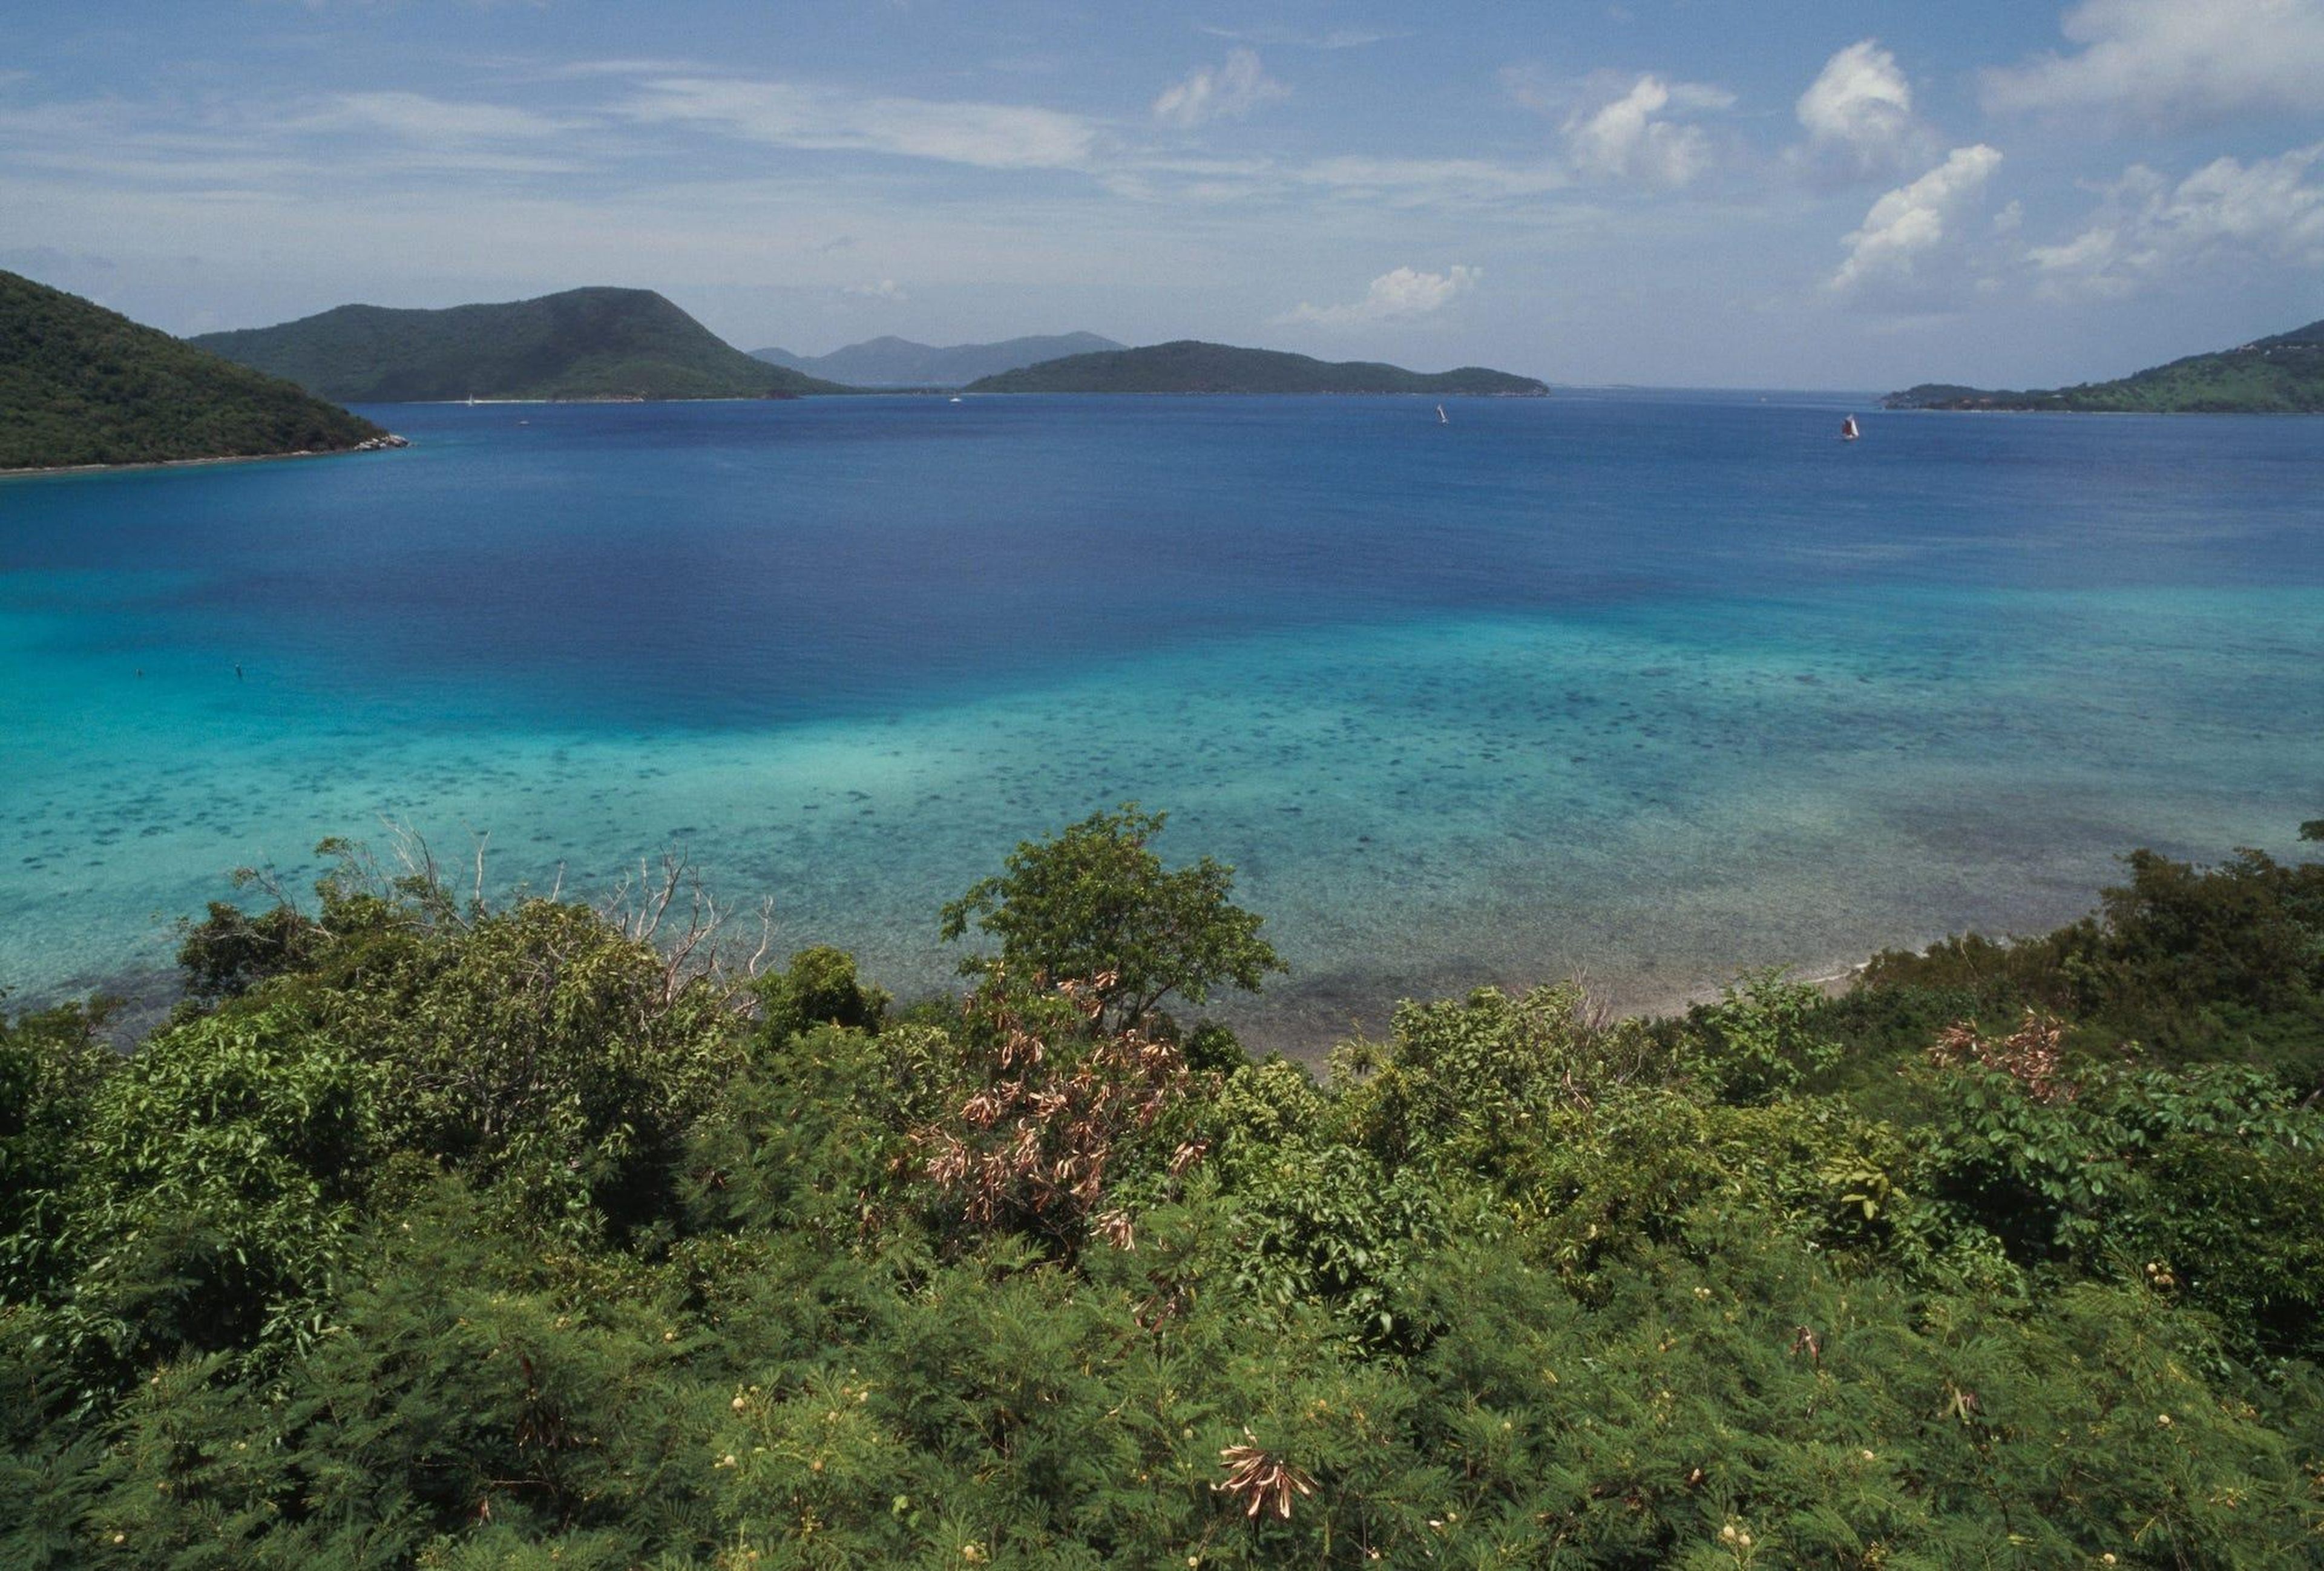 Vista de la isla de St. Thomas, donde los pasajeros esperaban al avión que nunca llegaría.